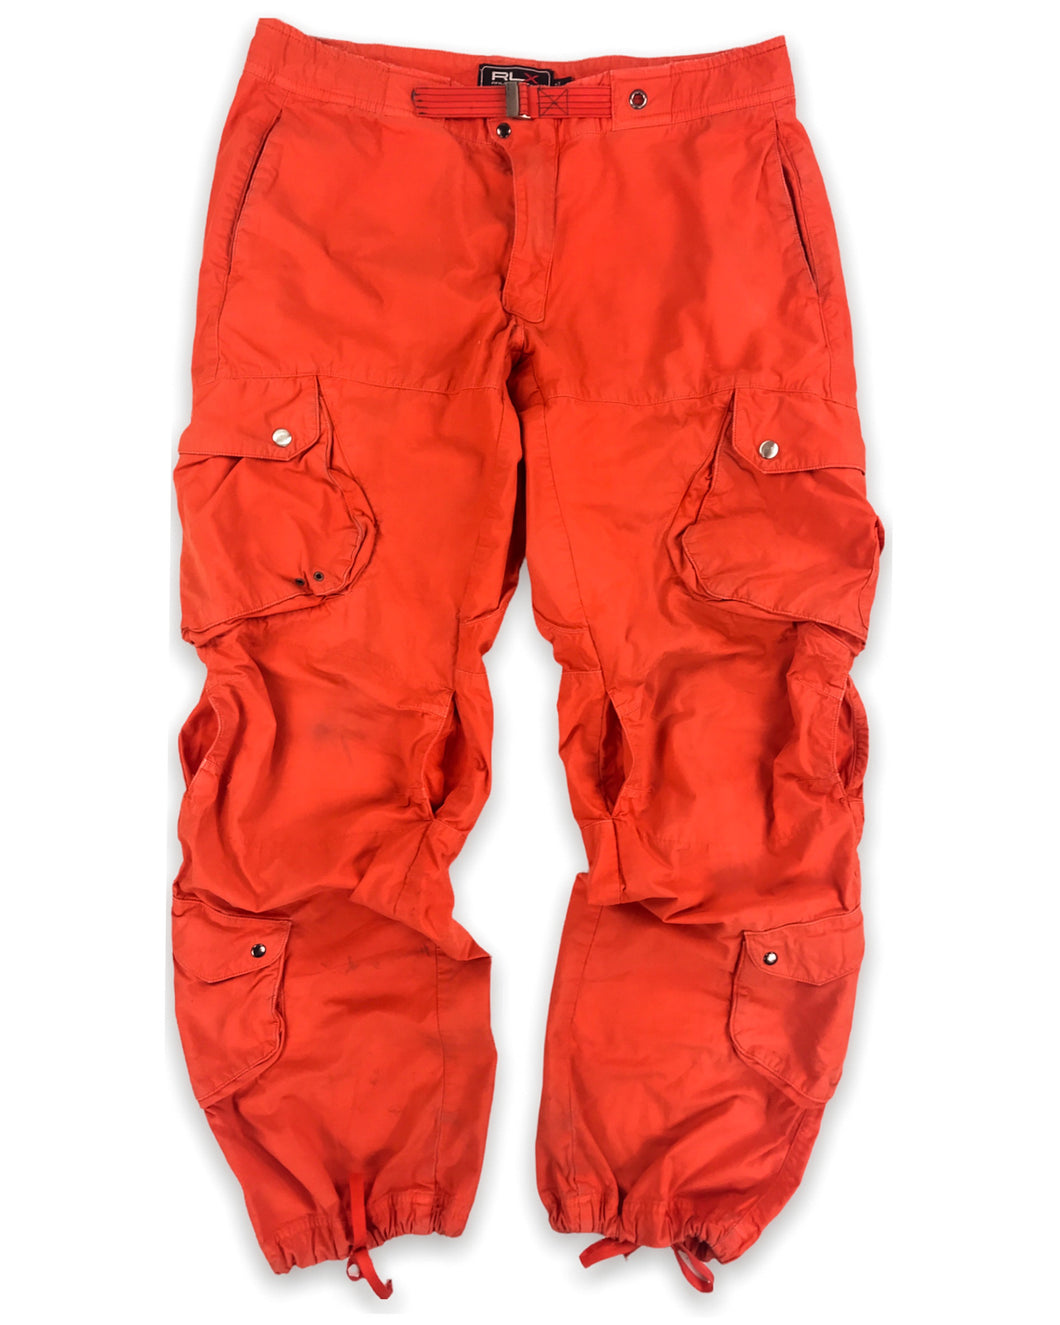 RALPH LAUREN RLX Tactical Cargo Pants (Early 2000’s)(32.5-36”)